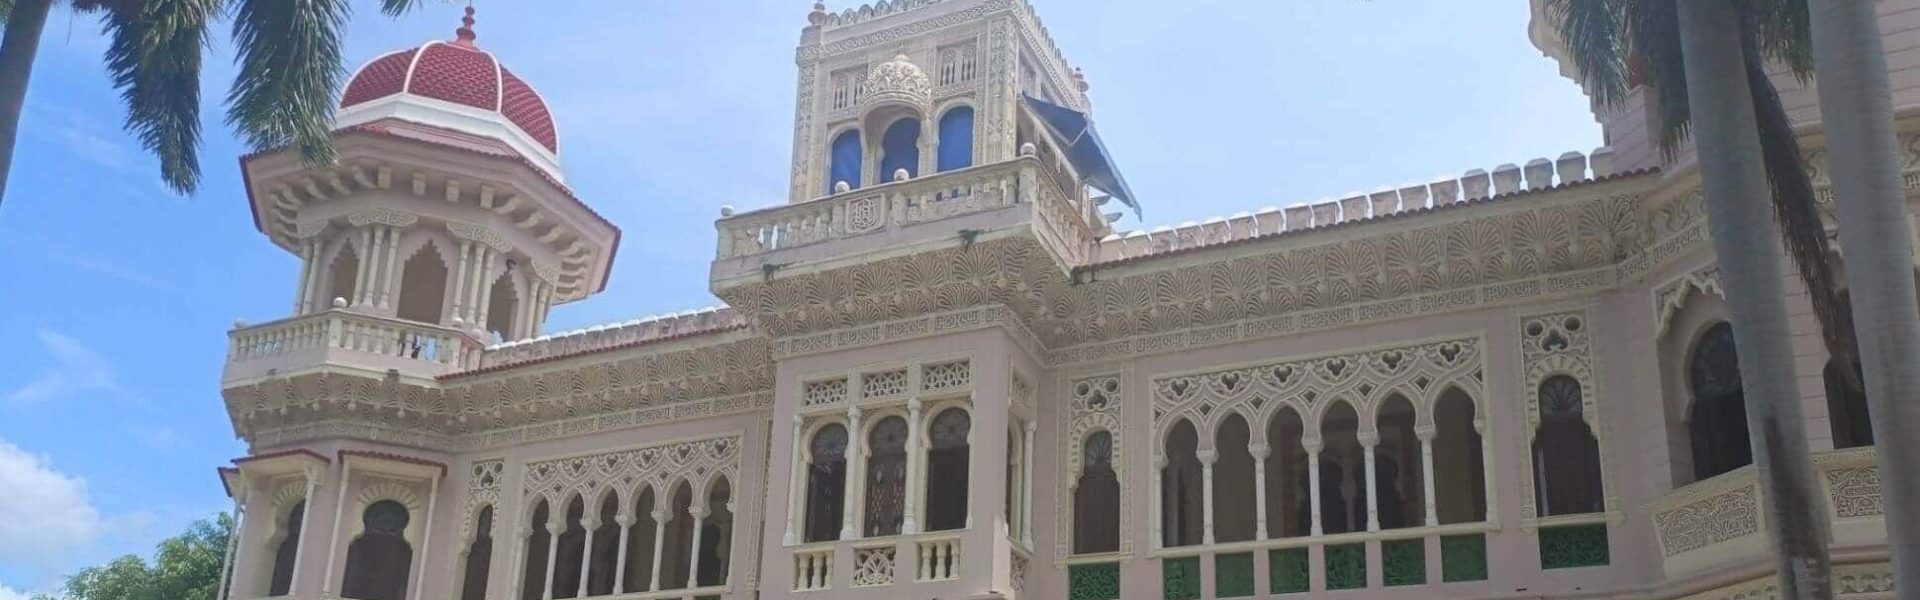 Palacio del Valle en Punta Gorda, Cuba.